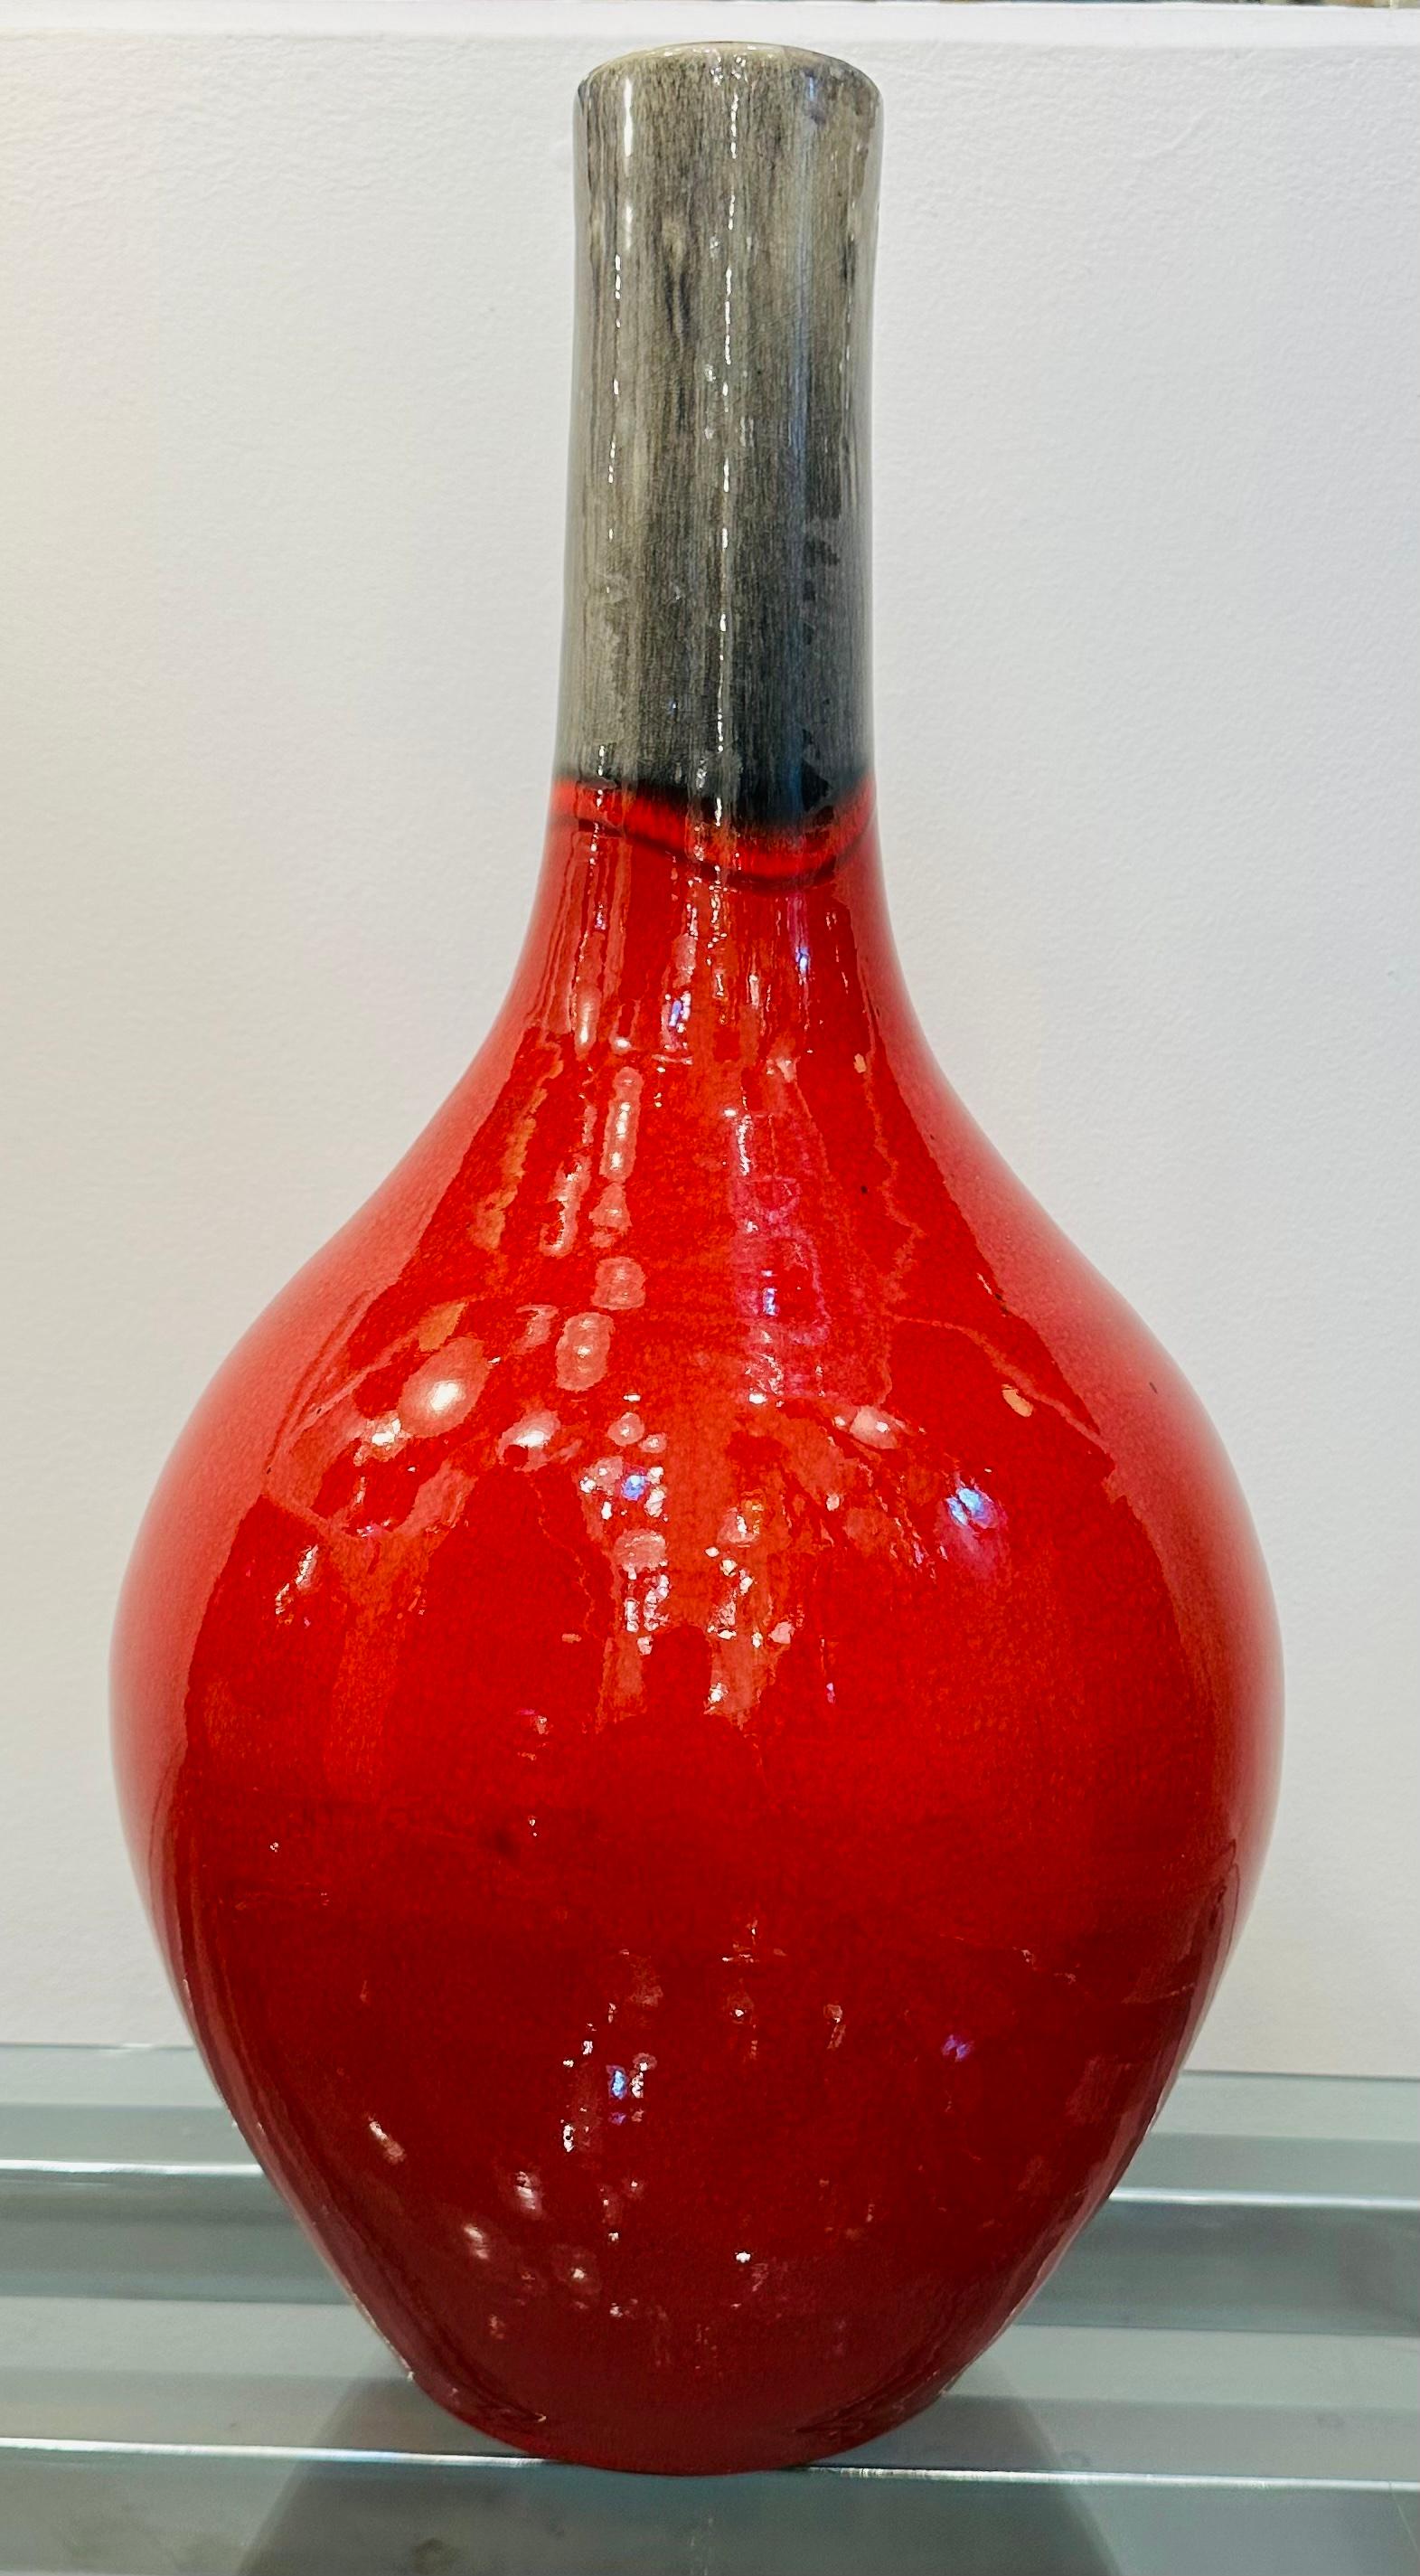  Eine große rot und grau gesprenkelte Keramikvase aus den 1970er Jahren mit Glasur.  Der bauchige Körper in intensivem, gesprenkeltem Rot mit einer wunderbar schimmernden Glasur verjüngt sich zum Hals hin, wo die Farbe in ein schmelzendes Grau mit